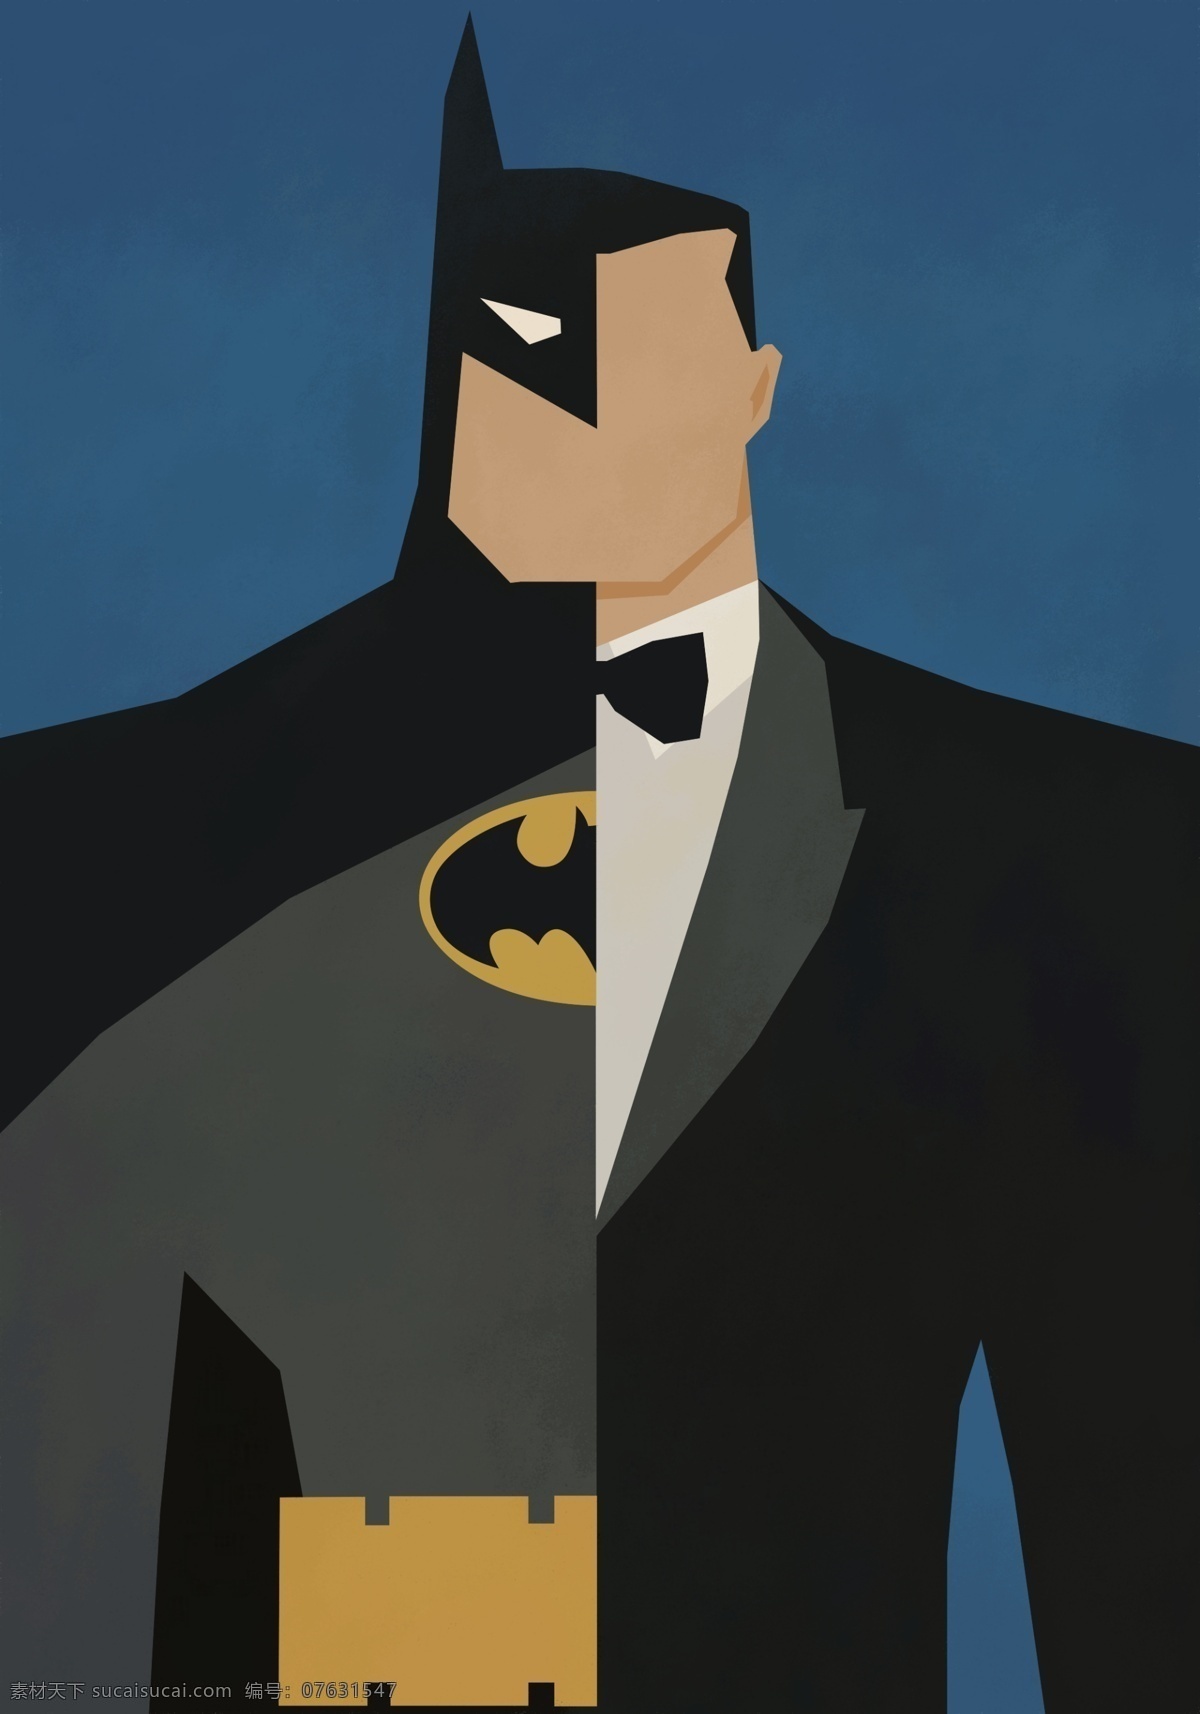 漫 威 dc 漫画 超级 英雄 装饰 桌面 画 蝙蝠侠漫威 超级英雄 卡通 创意 装饰画 壁纸 高清 文化艺术 绘画书法